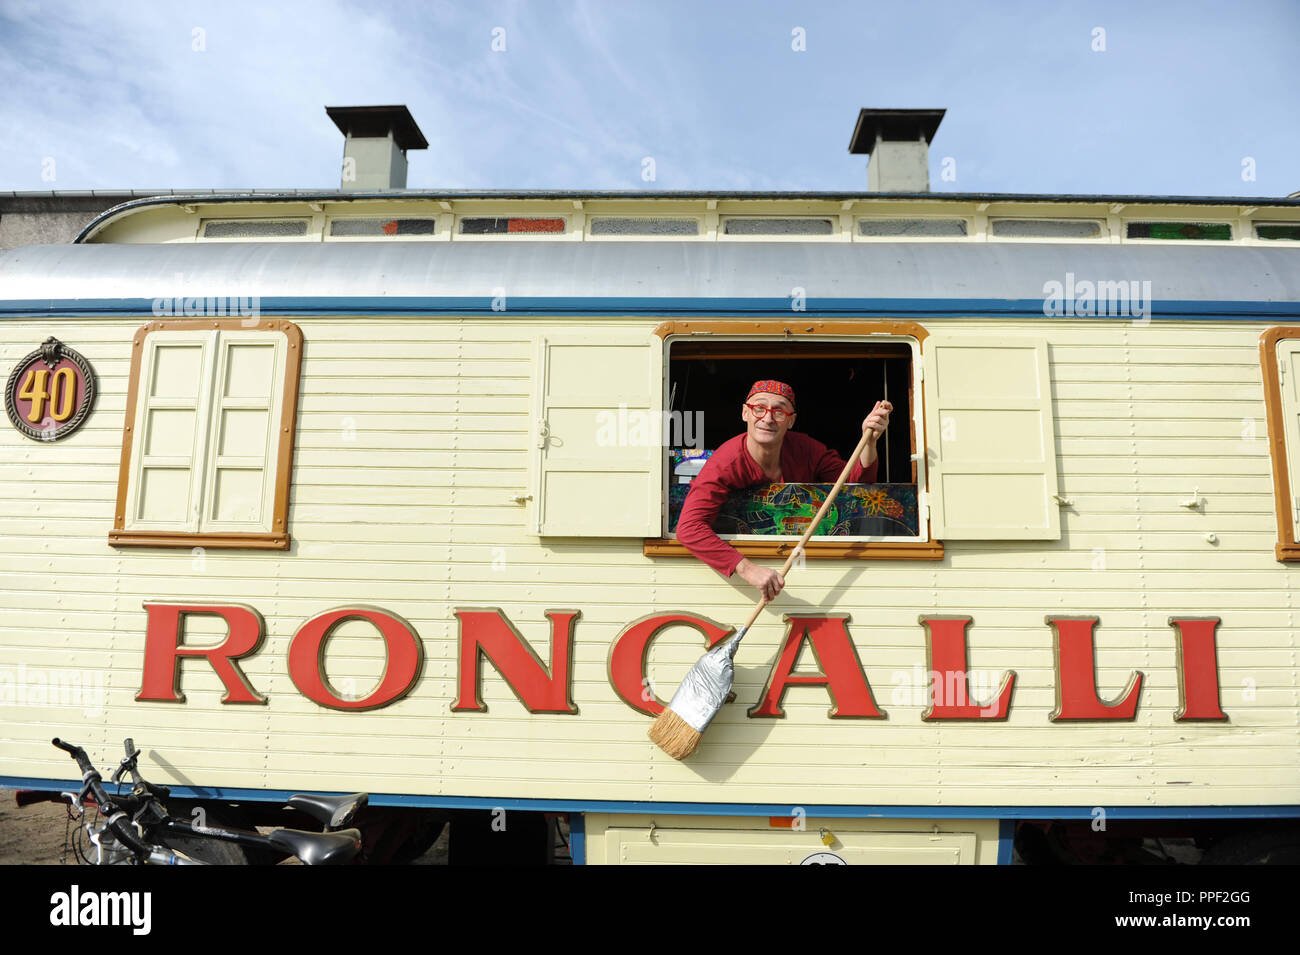 Letzte Vorbereitungen für die Premiere des Circus Roncalli auf dem Viehhof in München, Deutschland. Clown Gensi mit Besen in einem Zirkus auto Fenster. Stockfoto